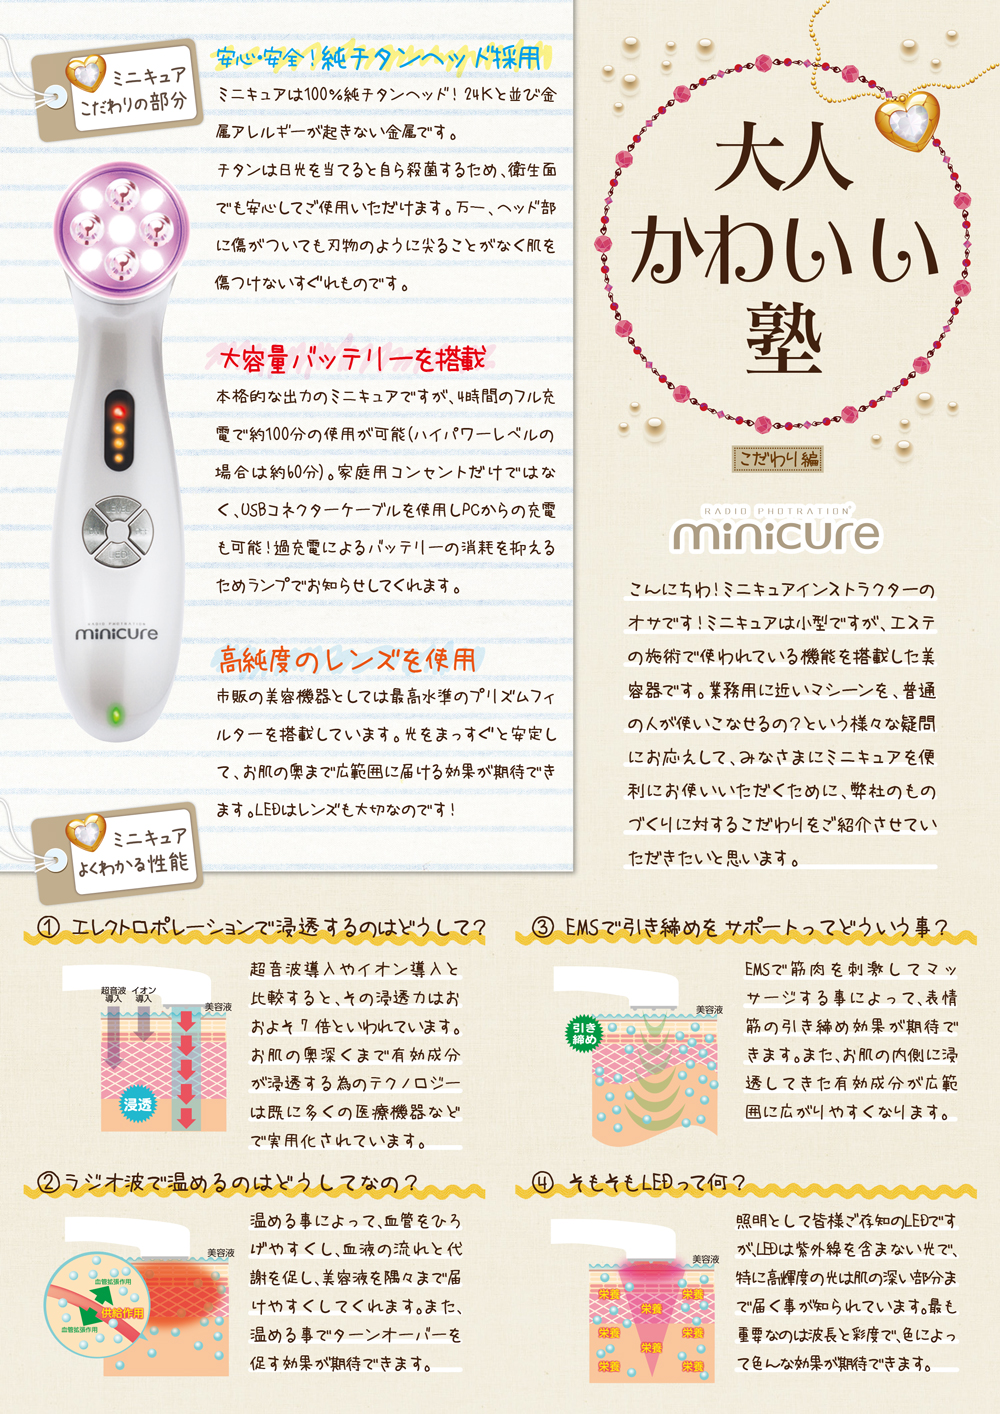 美顔器 minicure ミニキュア - 美容機器